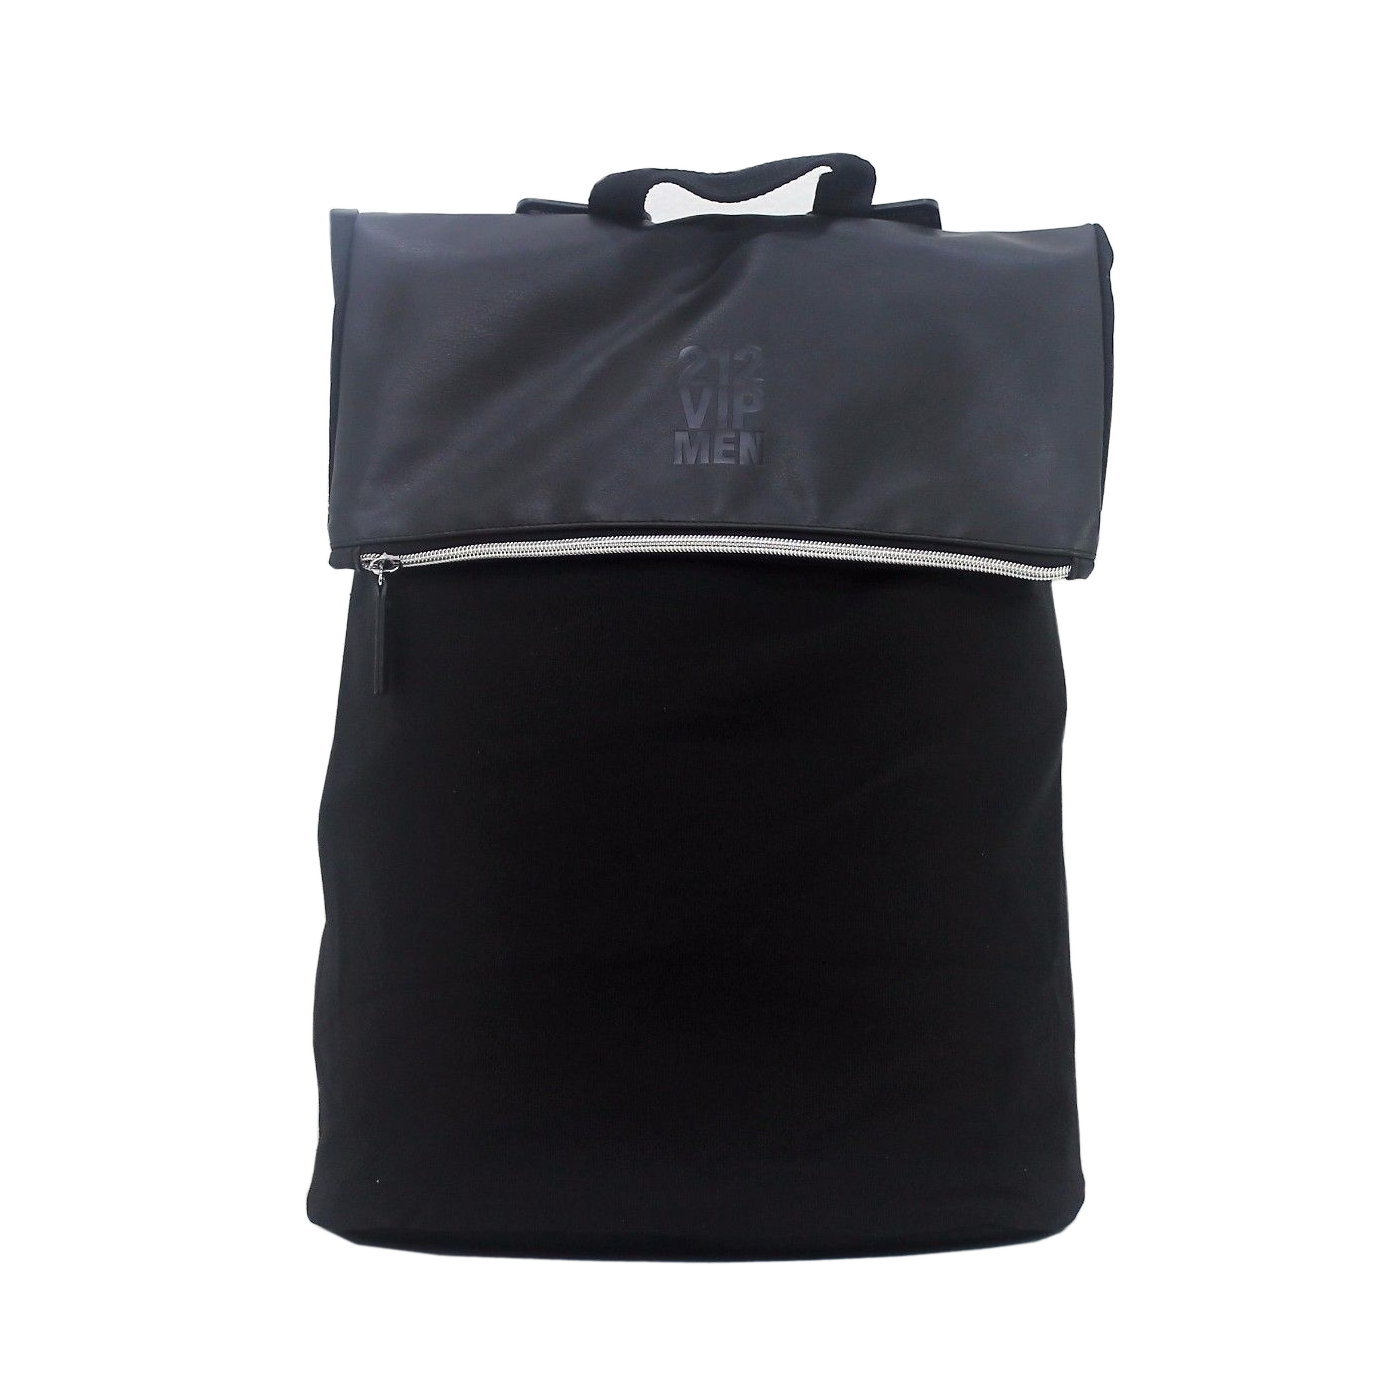 Carolina Herrera 212 VIP Men The VIP Essential Bag NYC Rucksack Backpack Bag - Feel Gorgeous